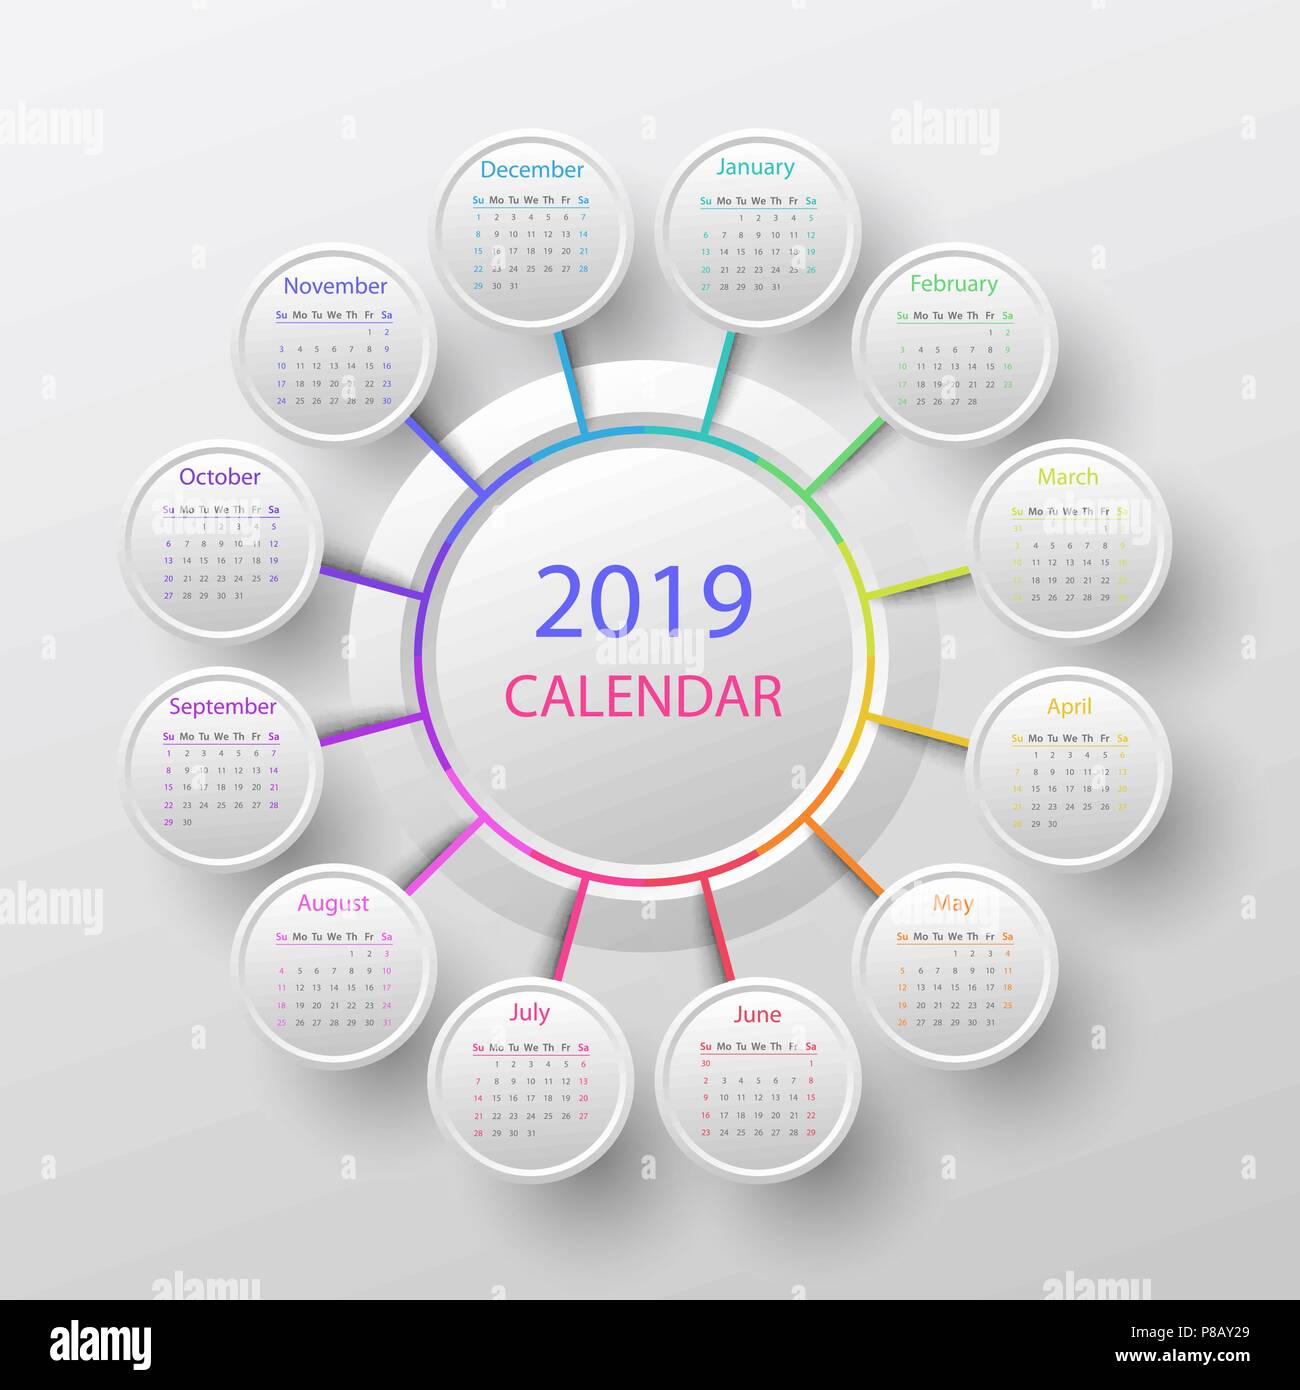 Vector 2019 calendar template Stock Vector